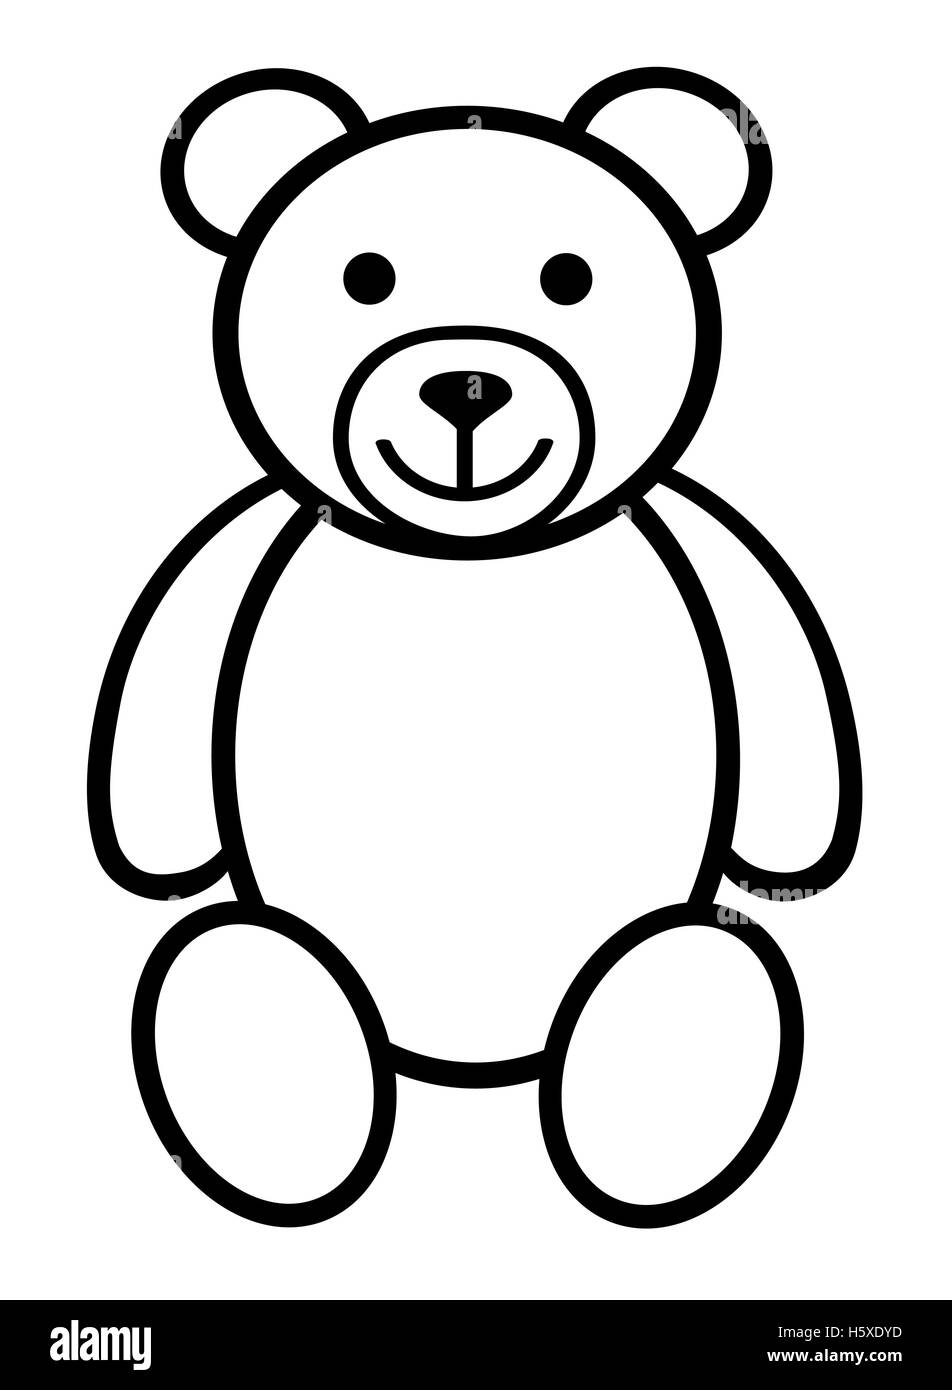 Teddy bear plush toy line art icon Stock Photo